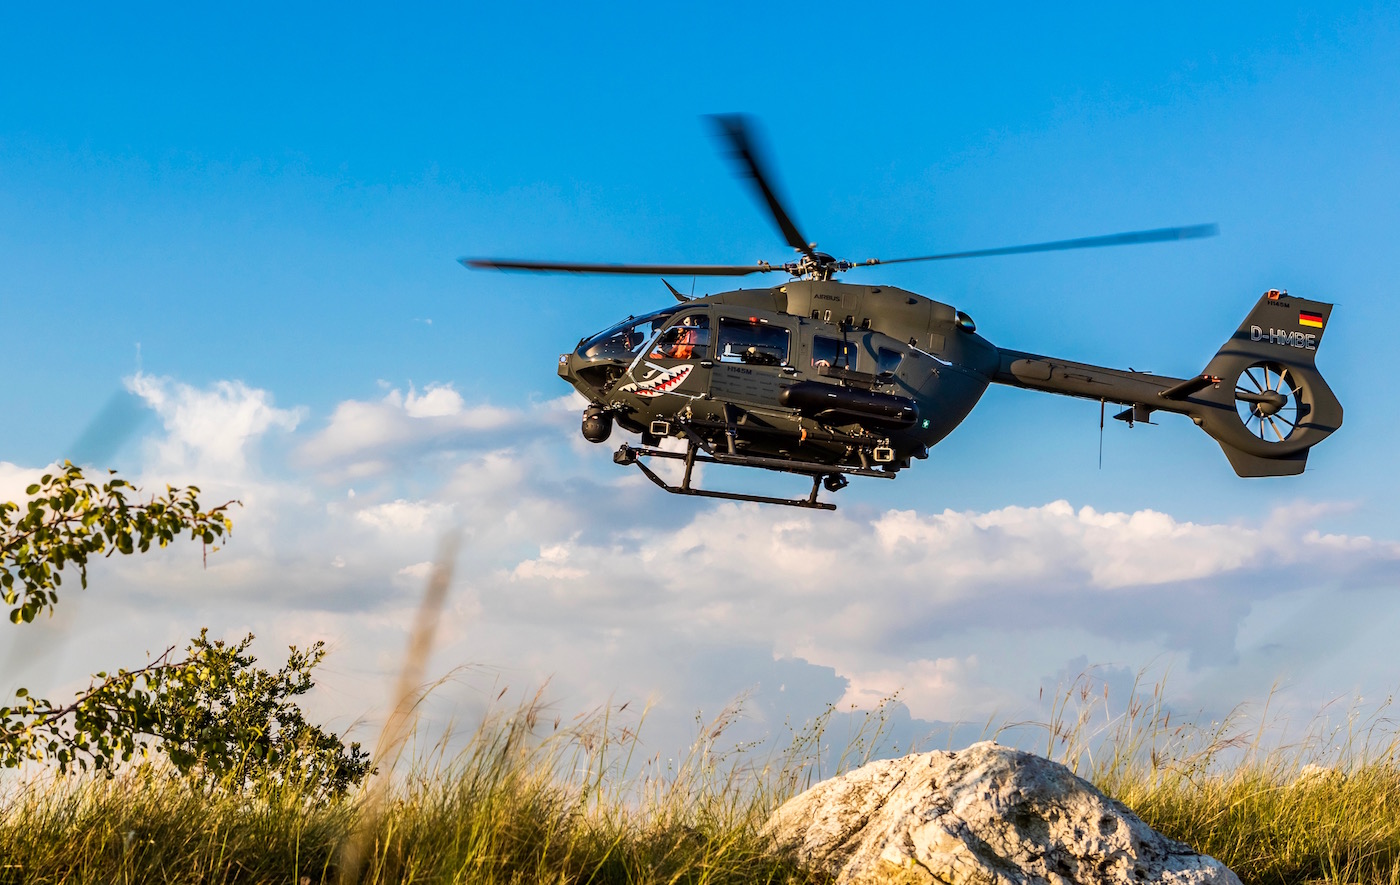 H145M podchodzący do lądowania na węgierkism poligonie Bakony. Fot.: Airbus Helicopters